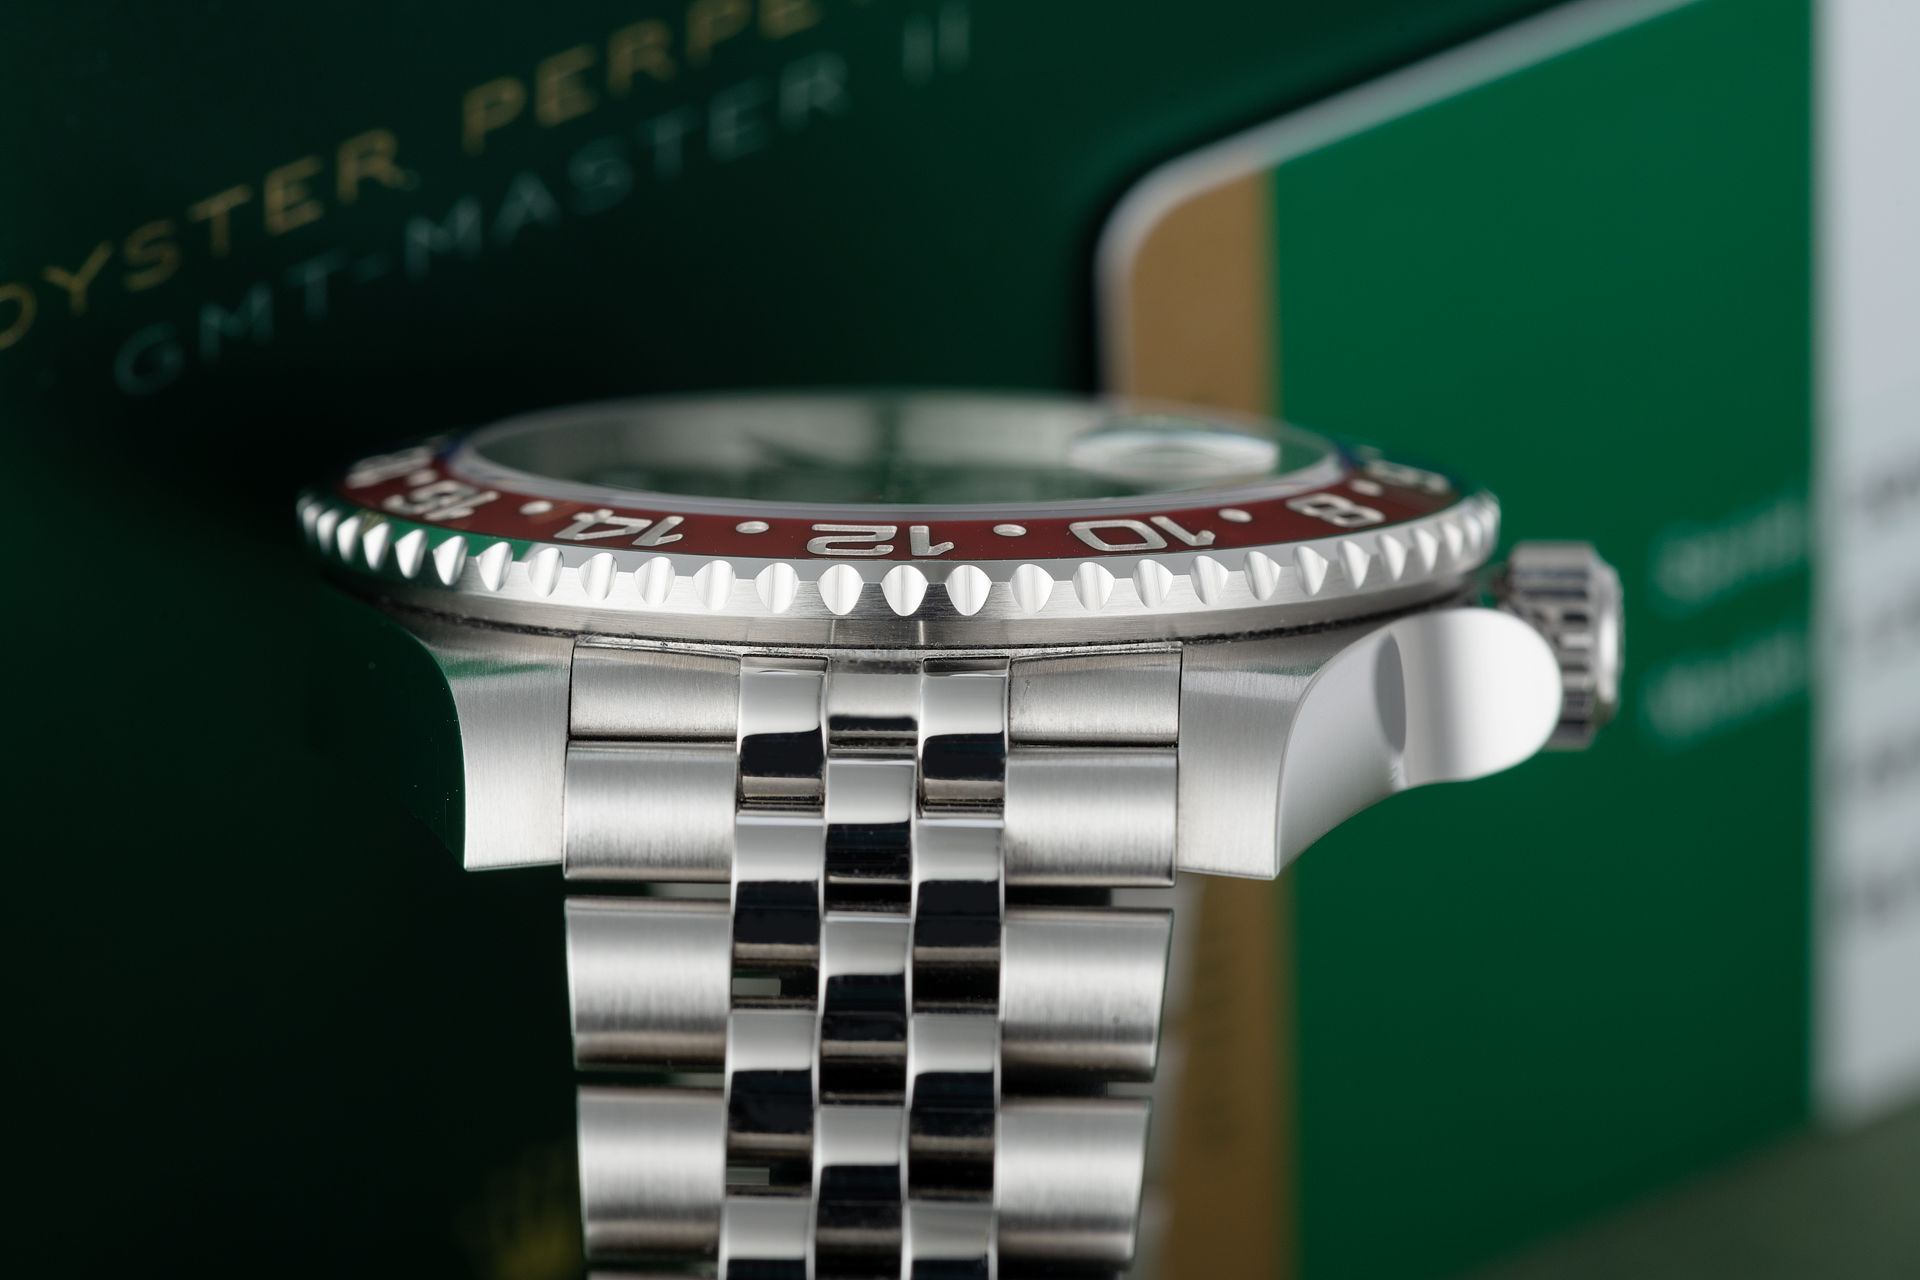 ref 126710BLRO | Brand New 5 Year Rolex Warranty | Rolex GMT-Master II